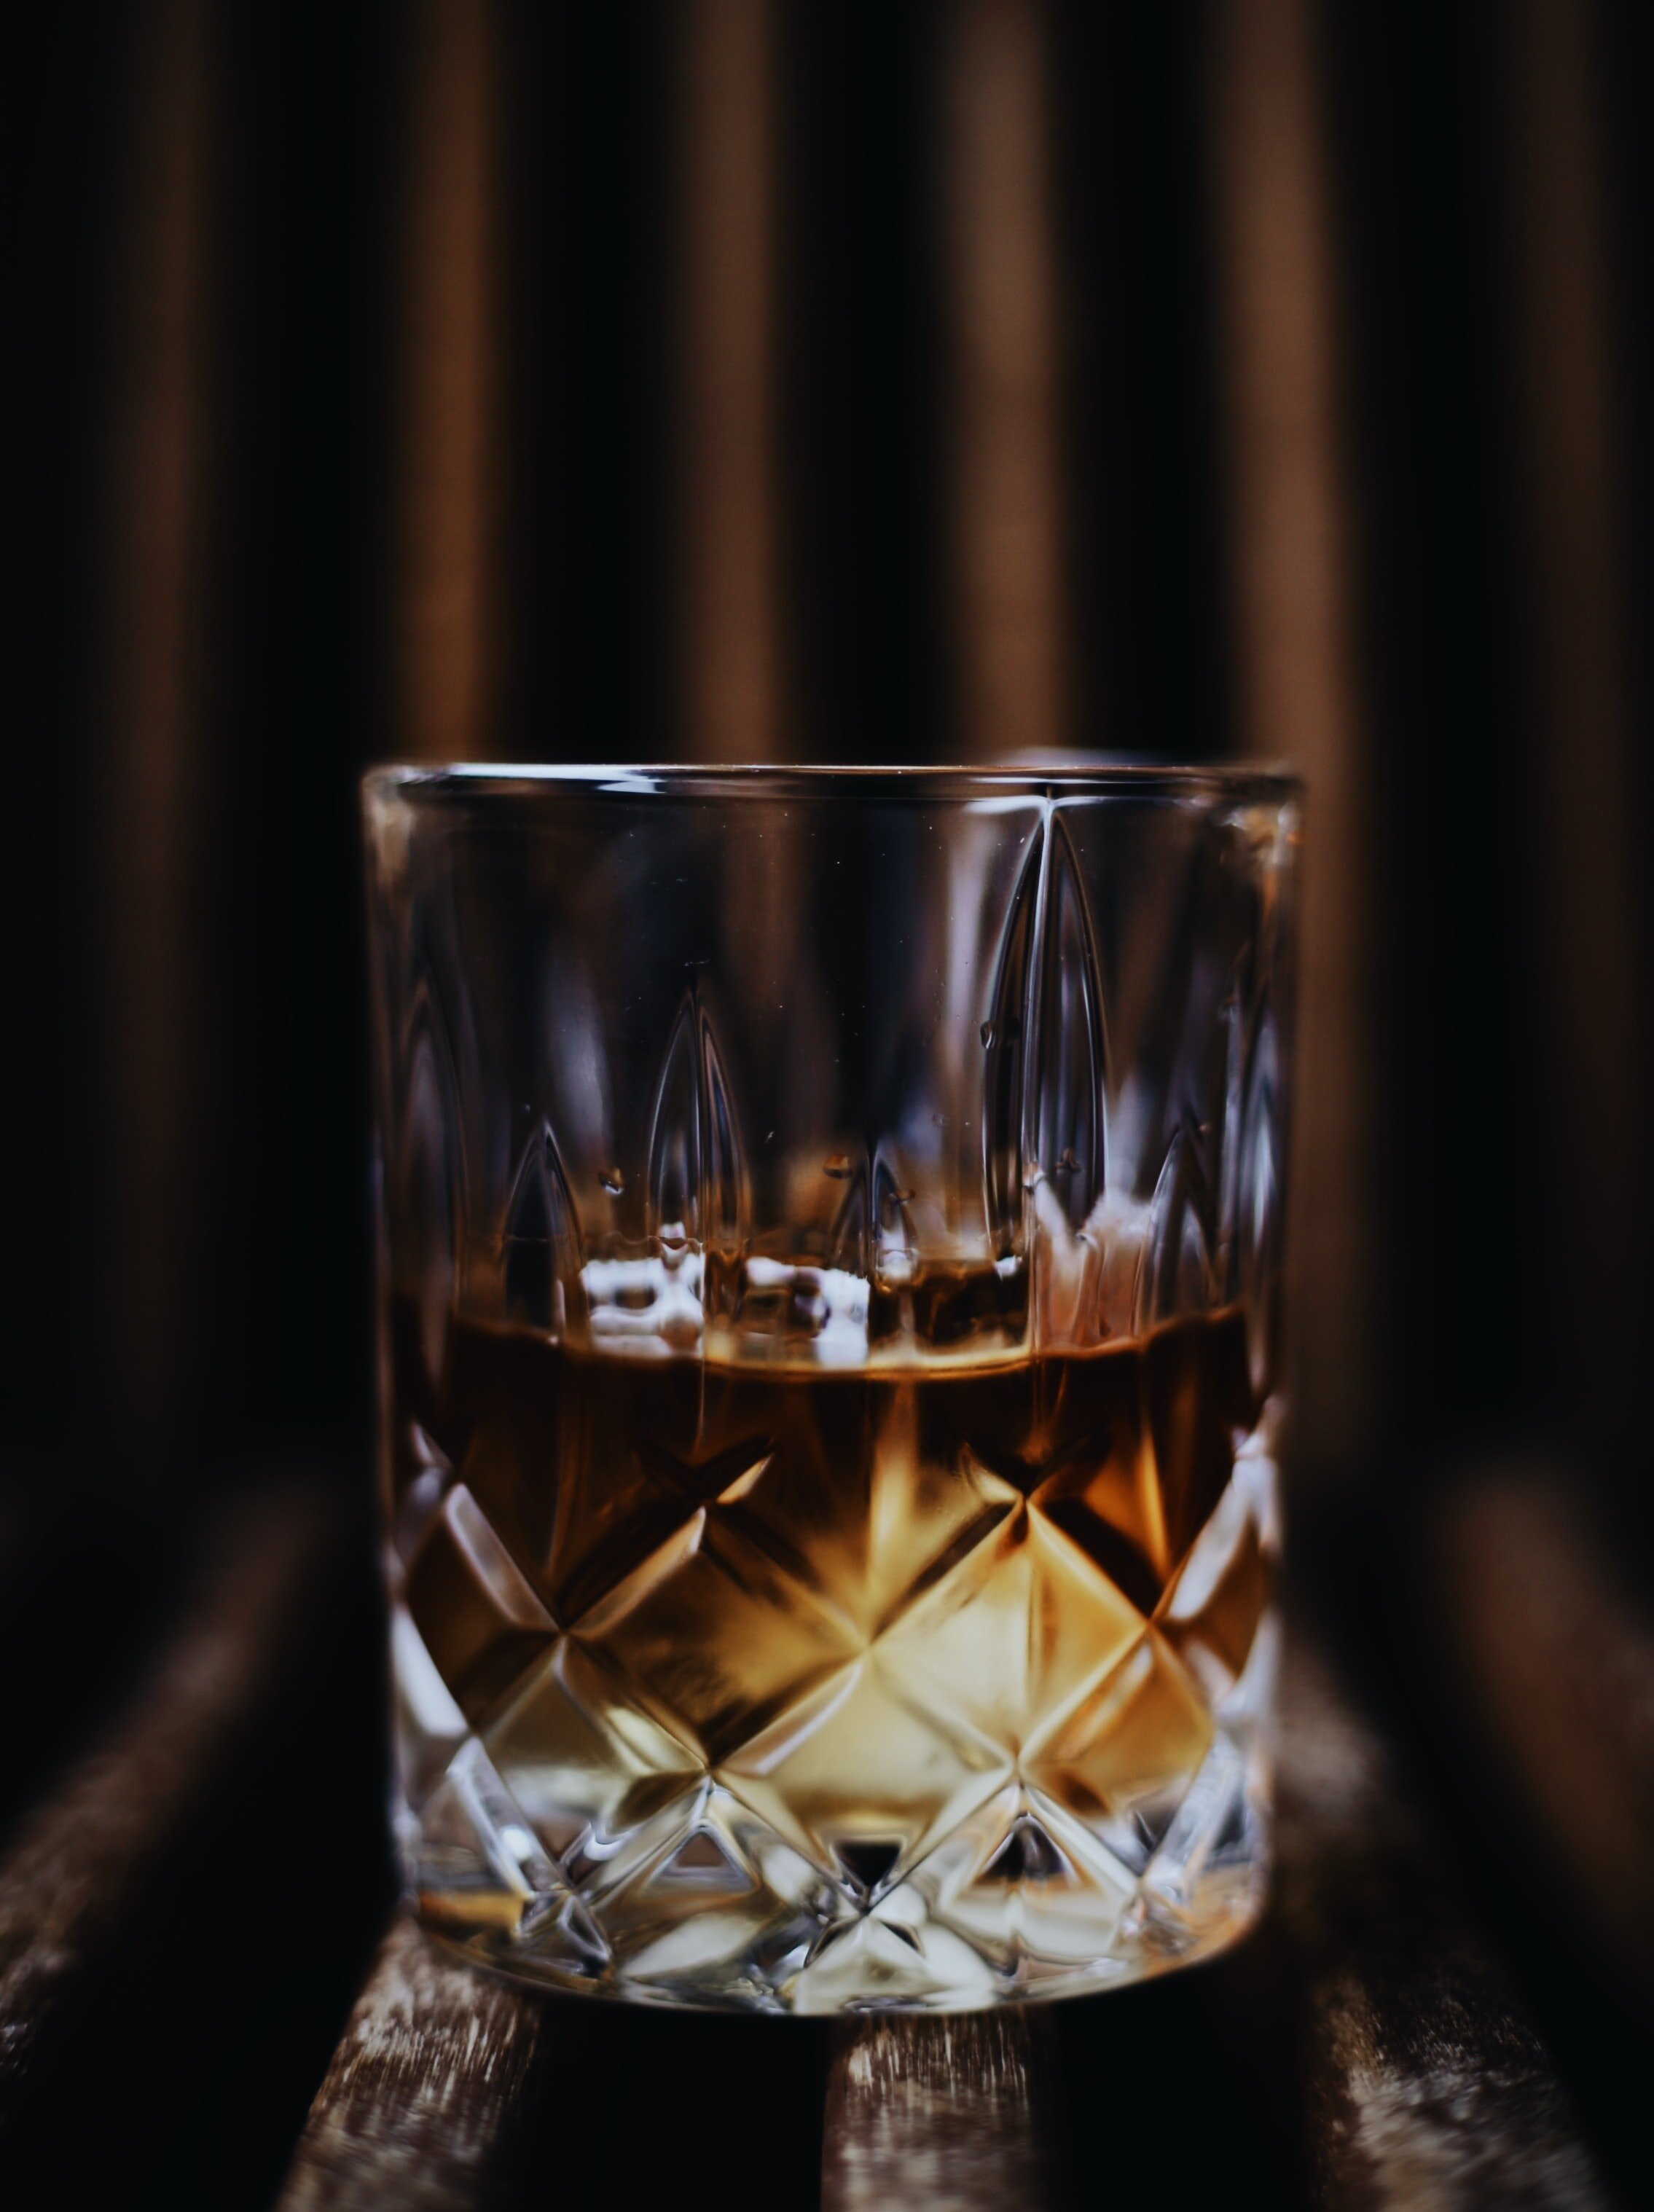 stockimage-whisky-glass-claus-grunstaudljpg.jpg